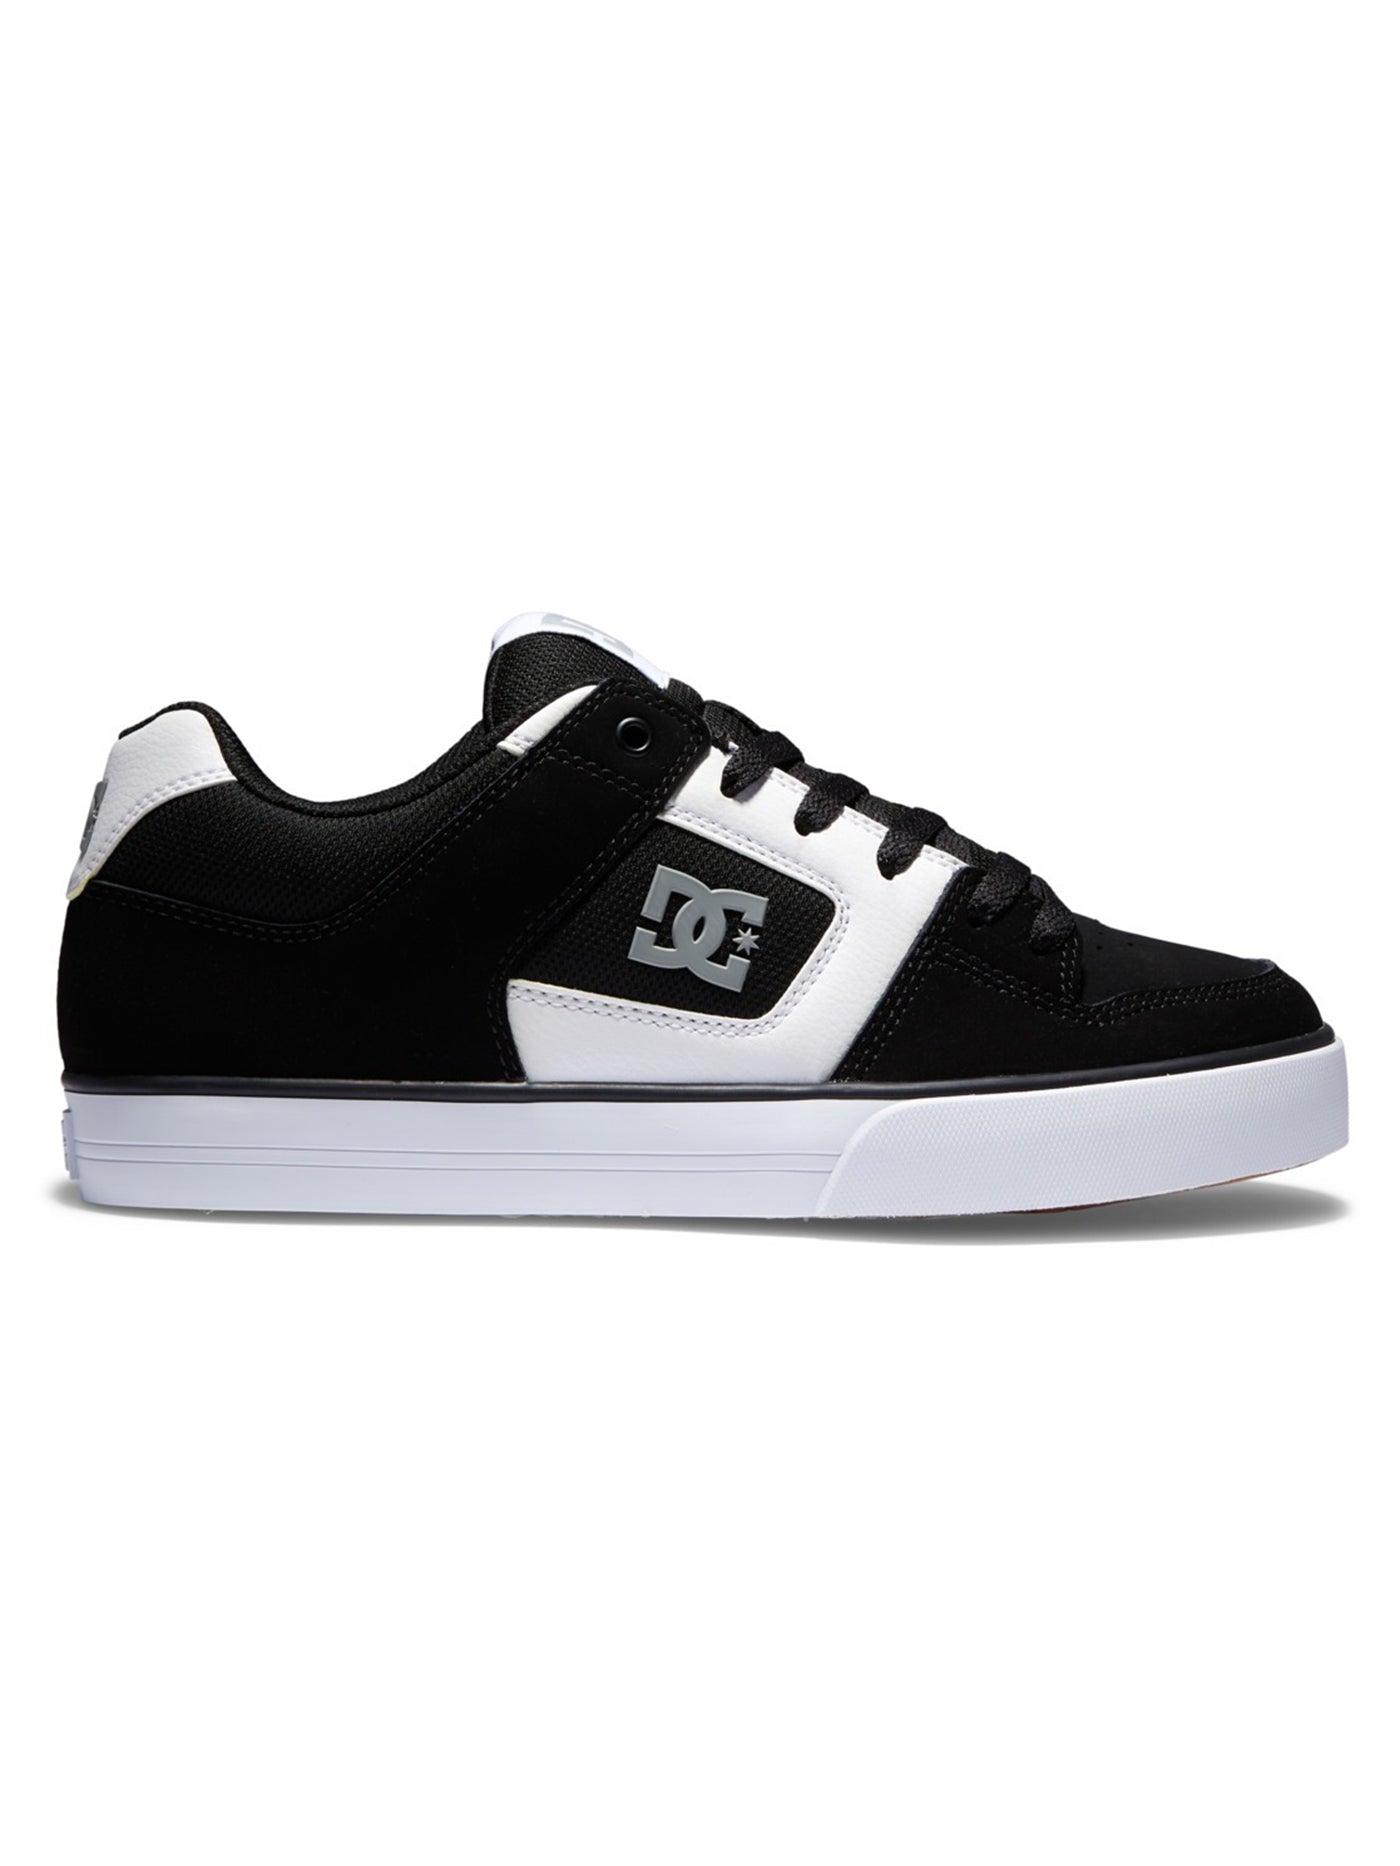 DC Pure Black/White/Gum Shoes